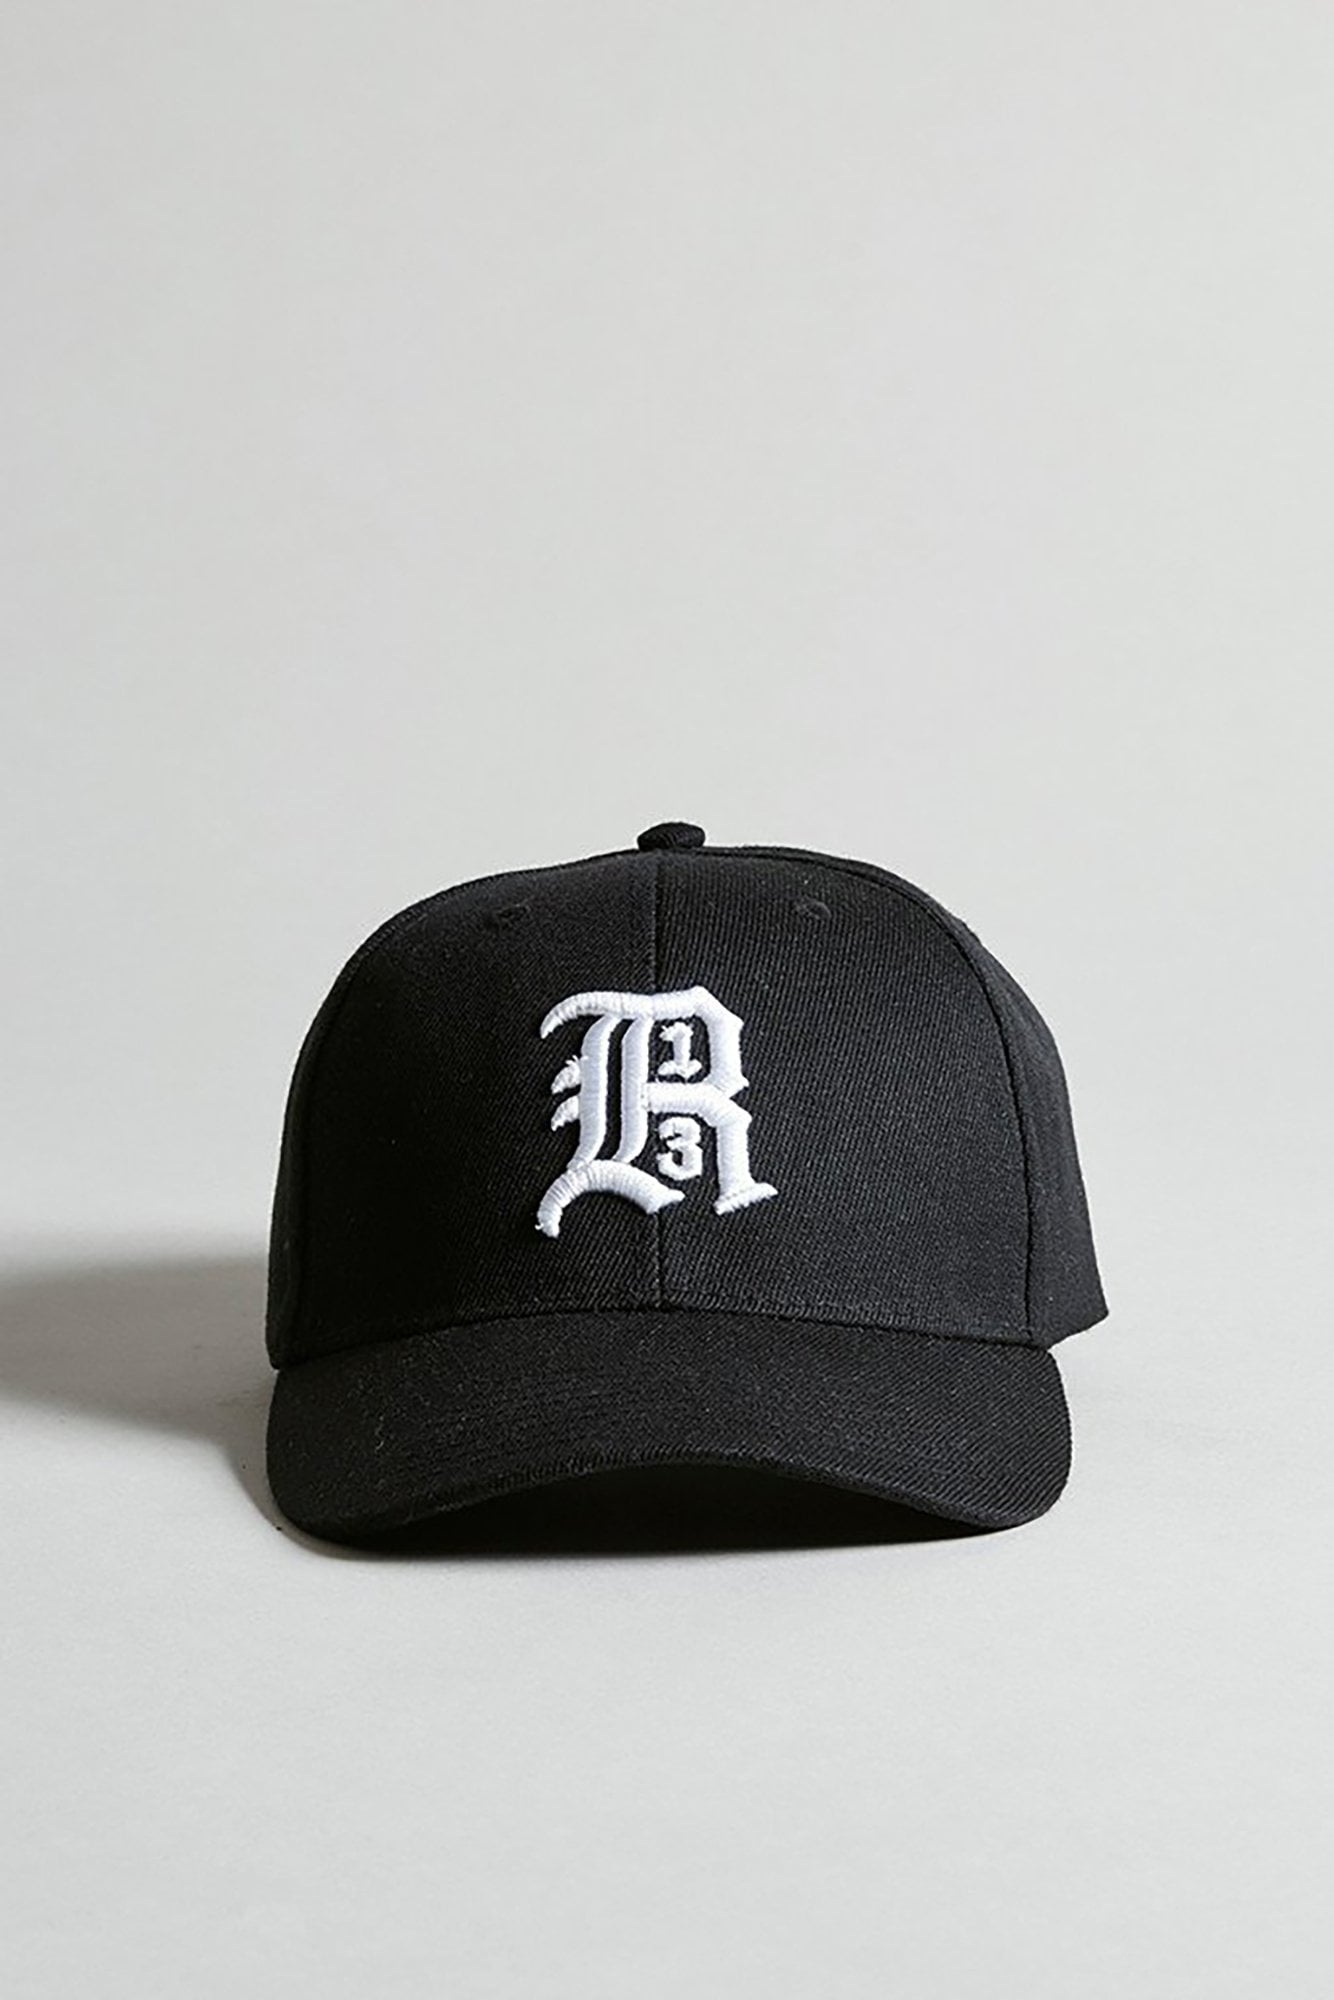 R13 ブラック ロゴ ベースボールキャップ新品帽子裏面